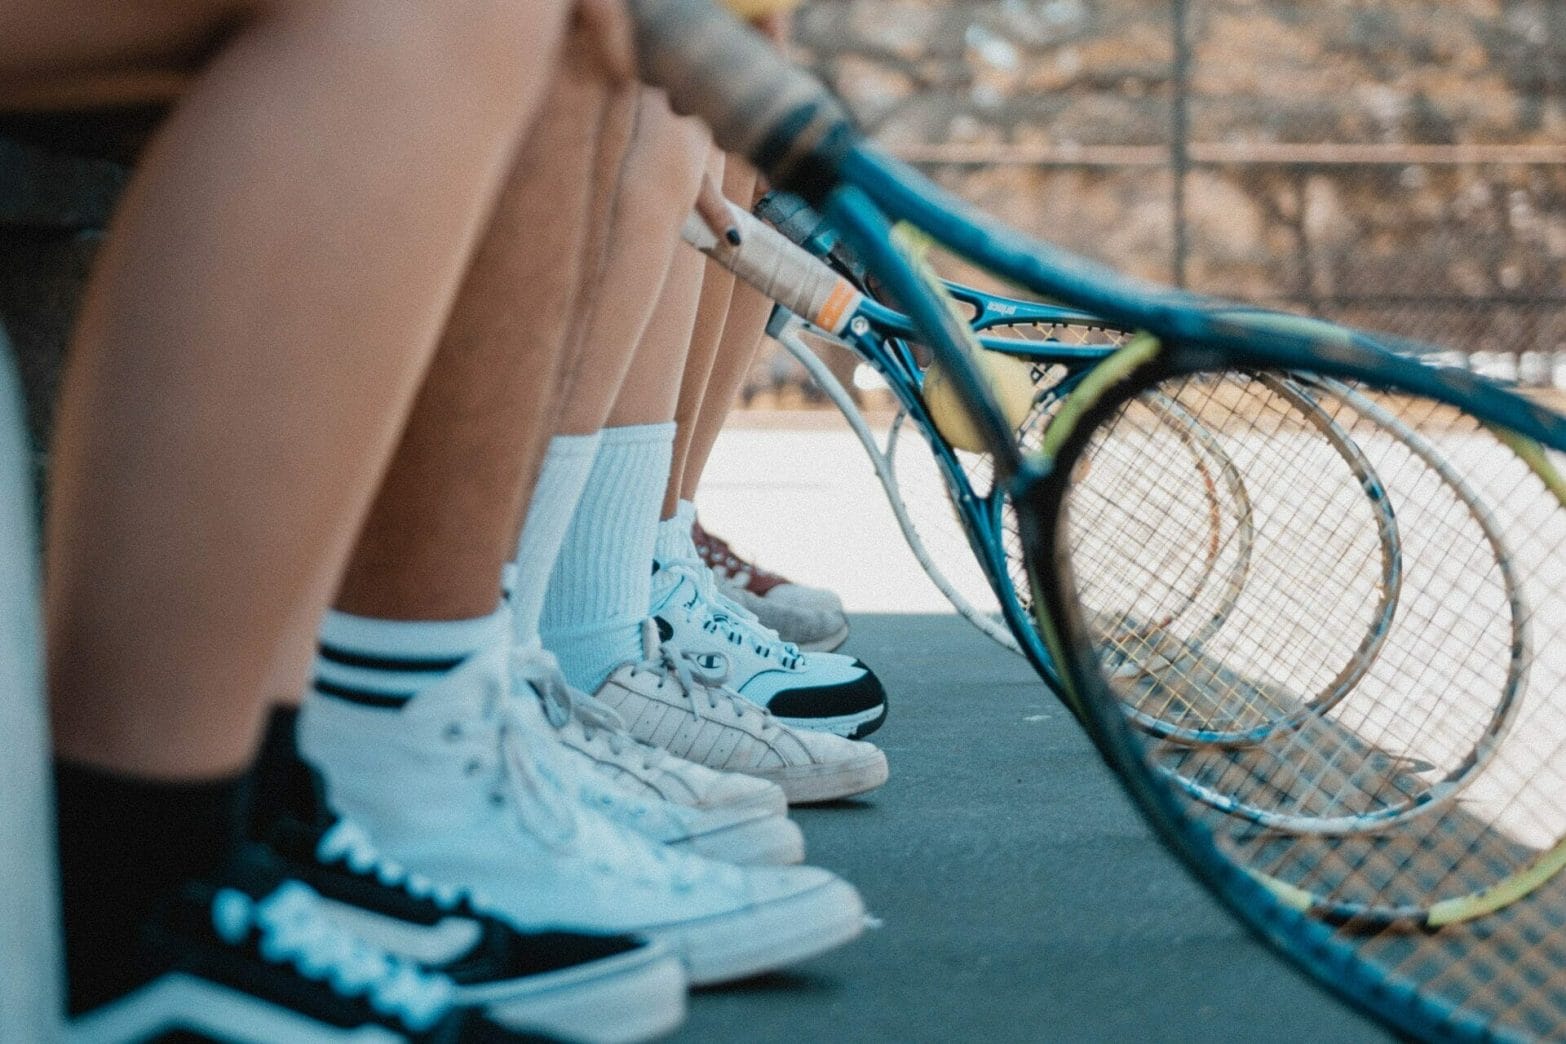 Badminton shoes vs tennis shoes